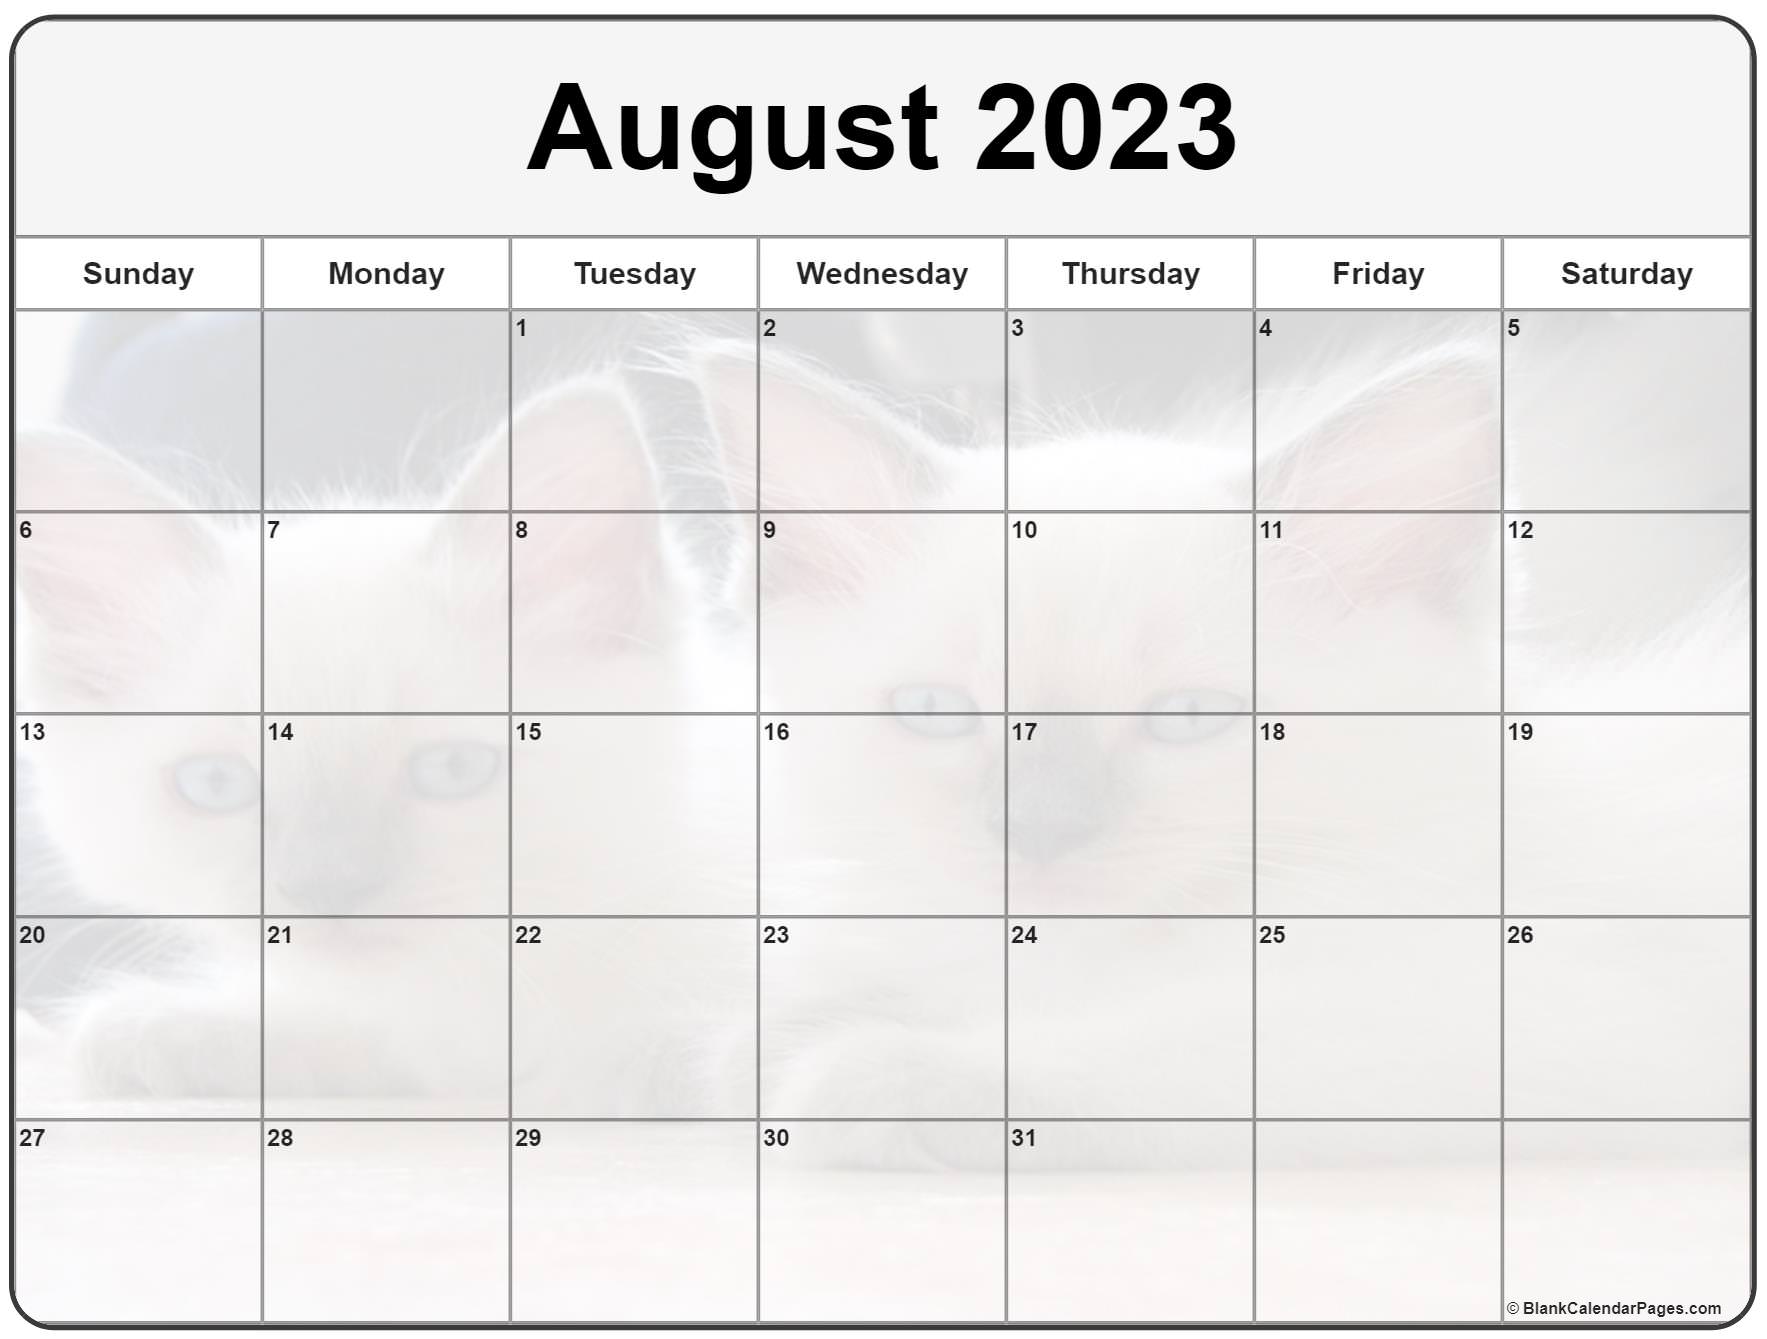 free-printable-august-2023-calendar-12-templates-discord-pelajaran